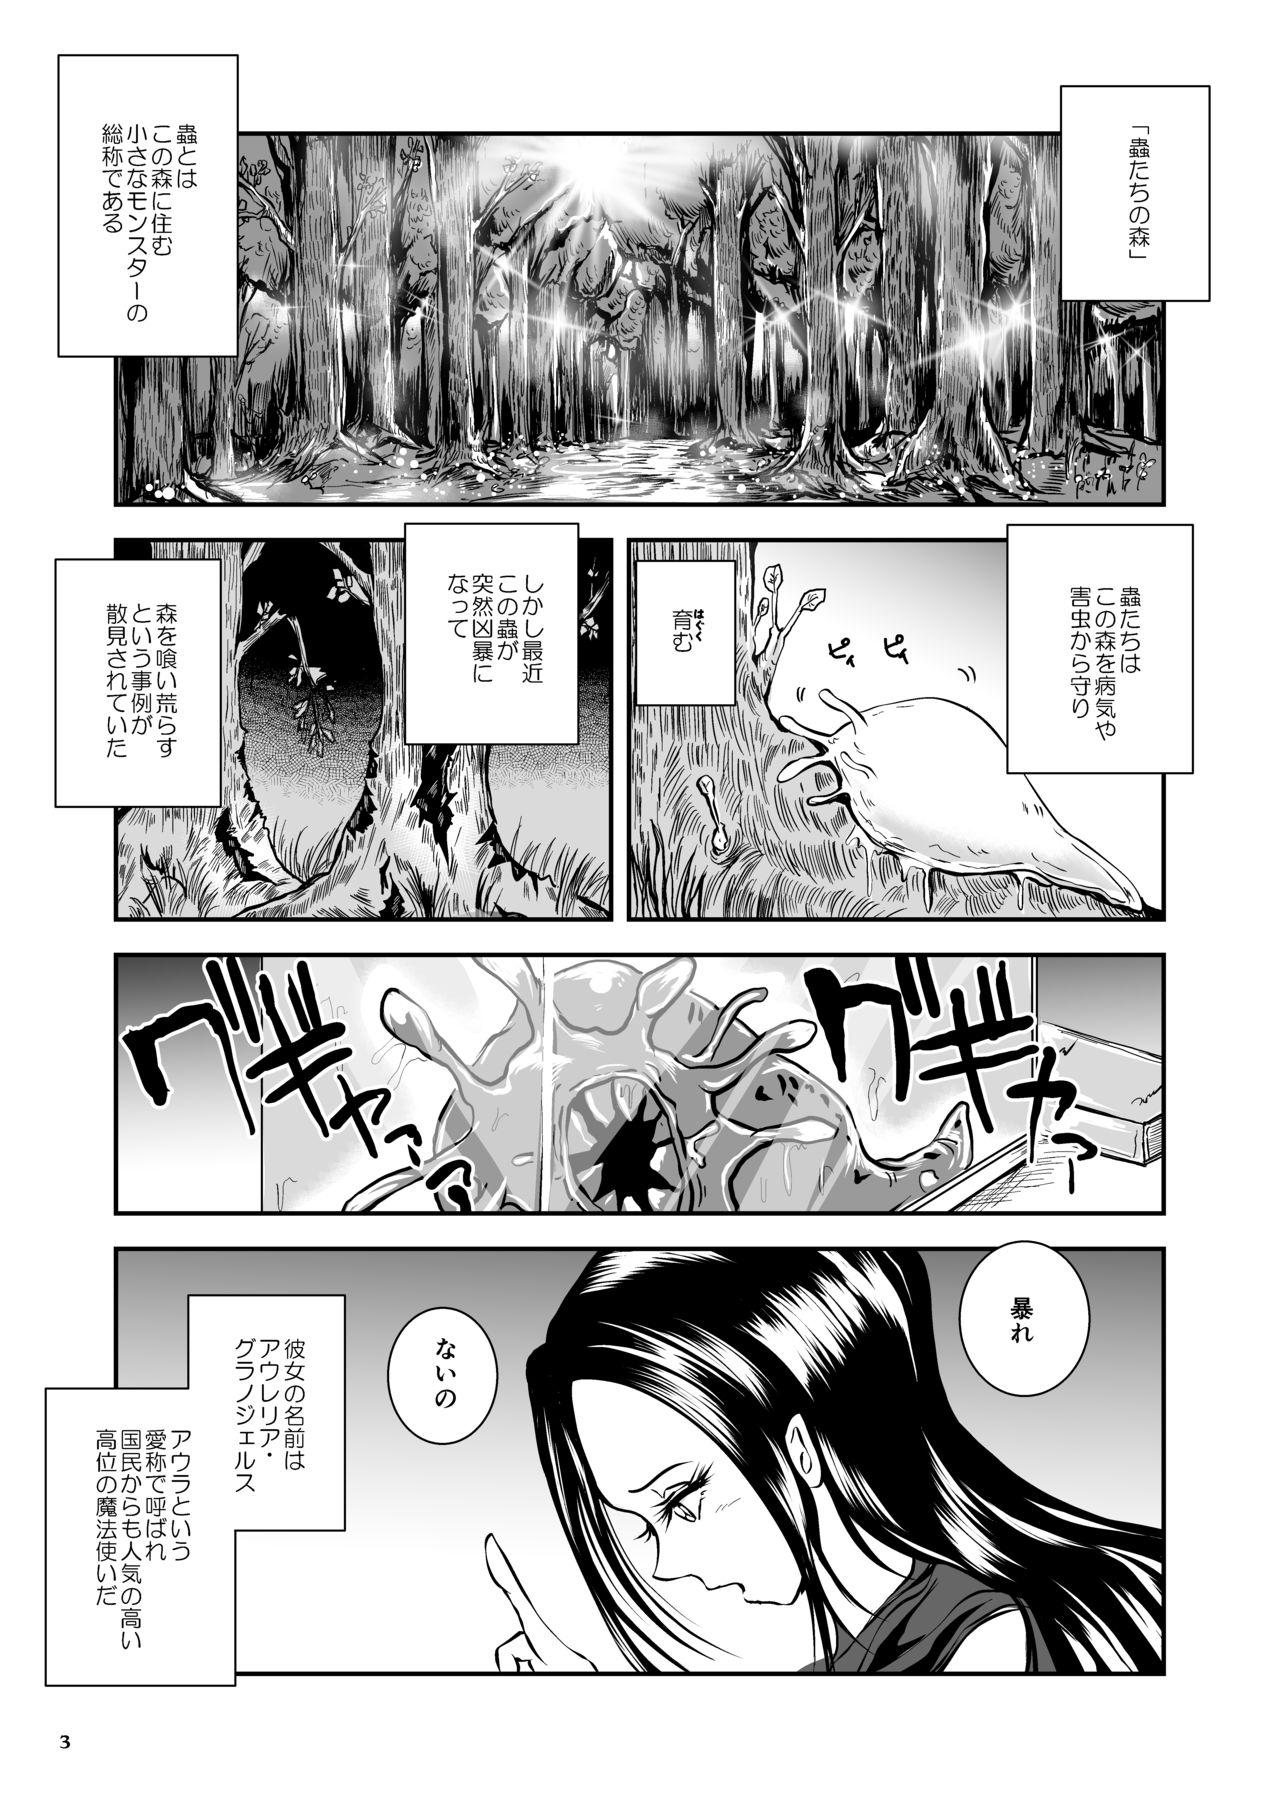 Oonamekuji to Kurokami no Mahoutsukai - Parasitized Giant Slugs V.S. Sorceress of the Black Hair as Aura 94